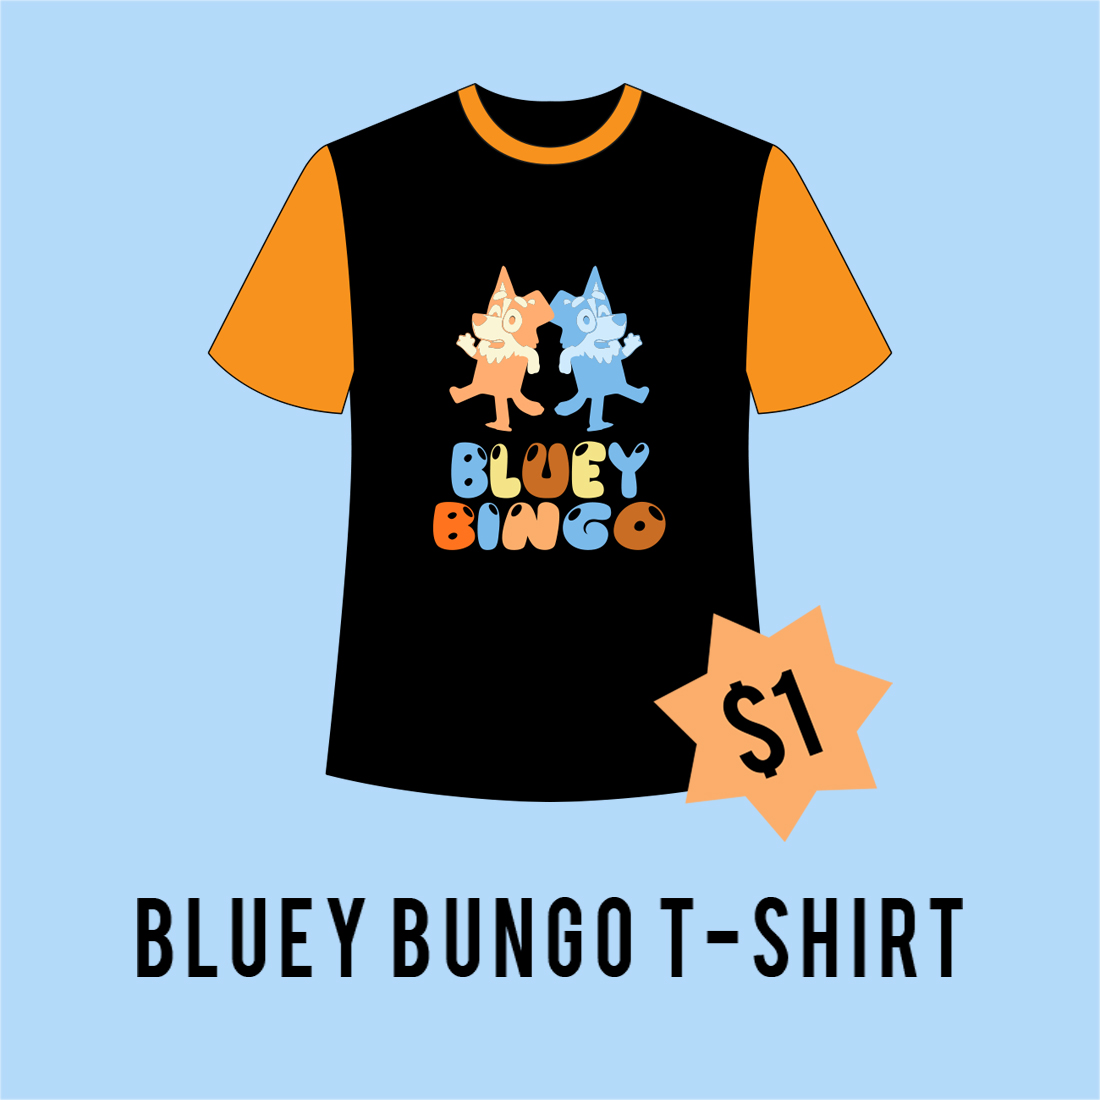 Blue Bingo Vintage Illustration Vector T-Shirt Design.